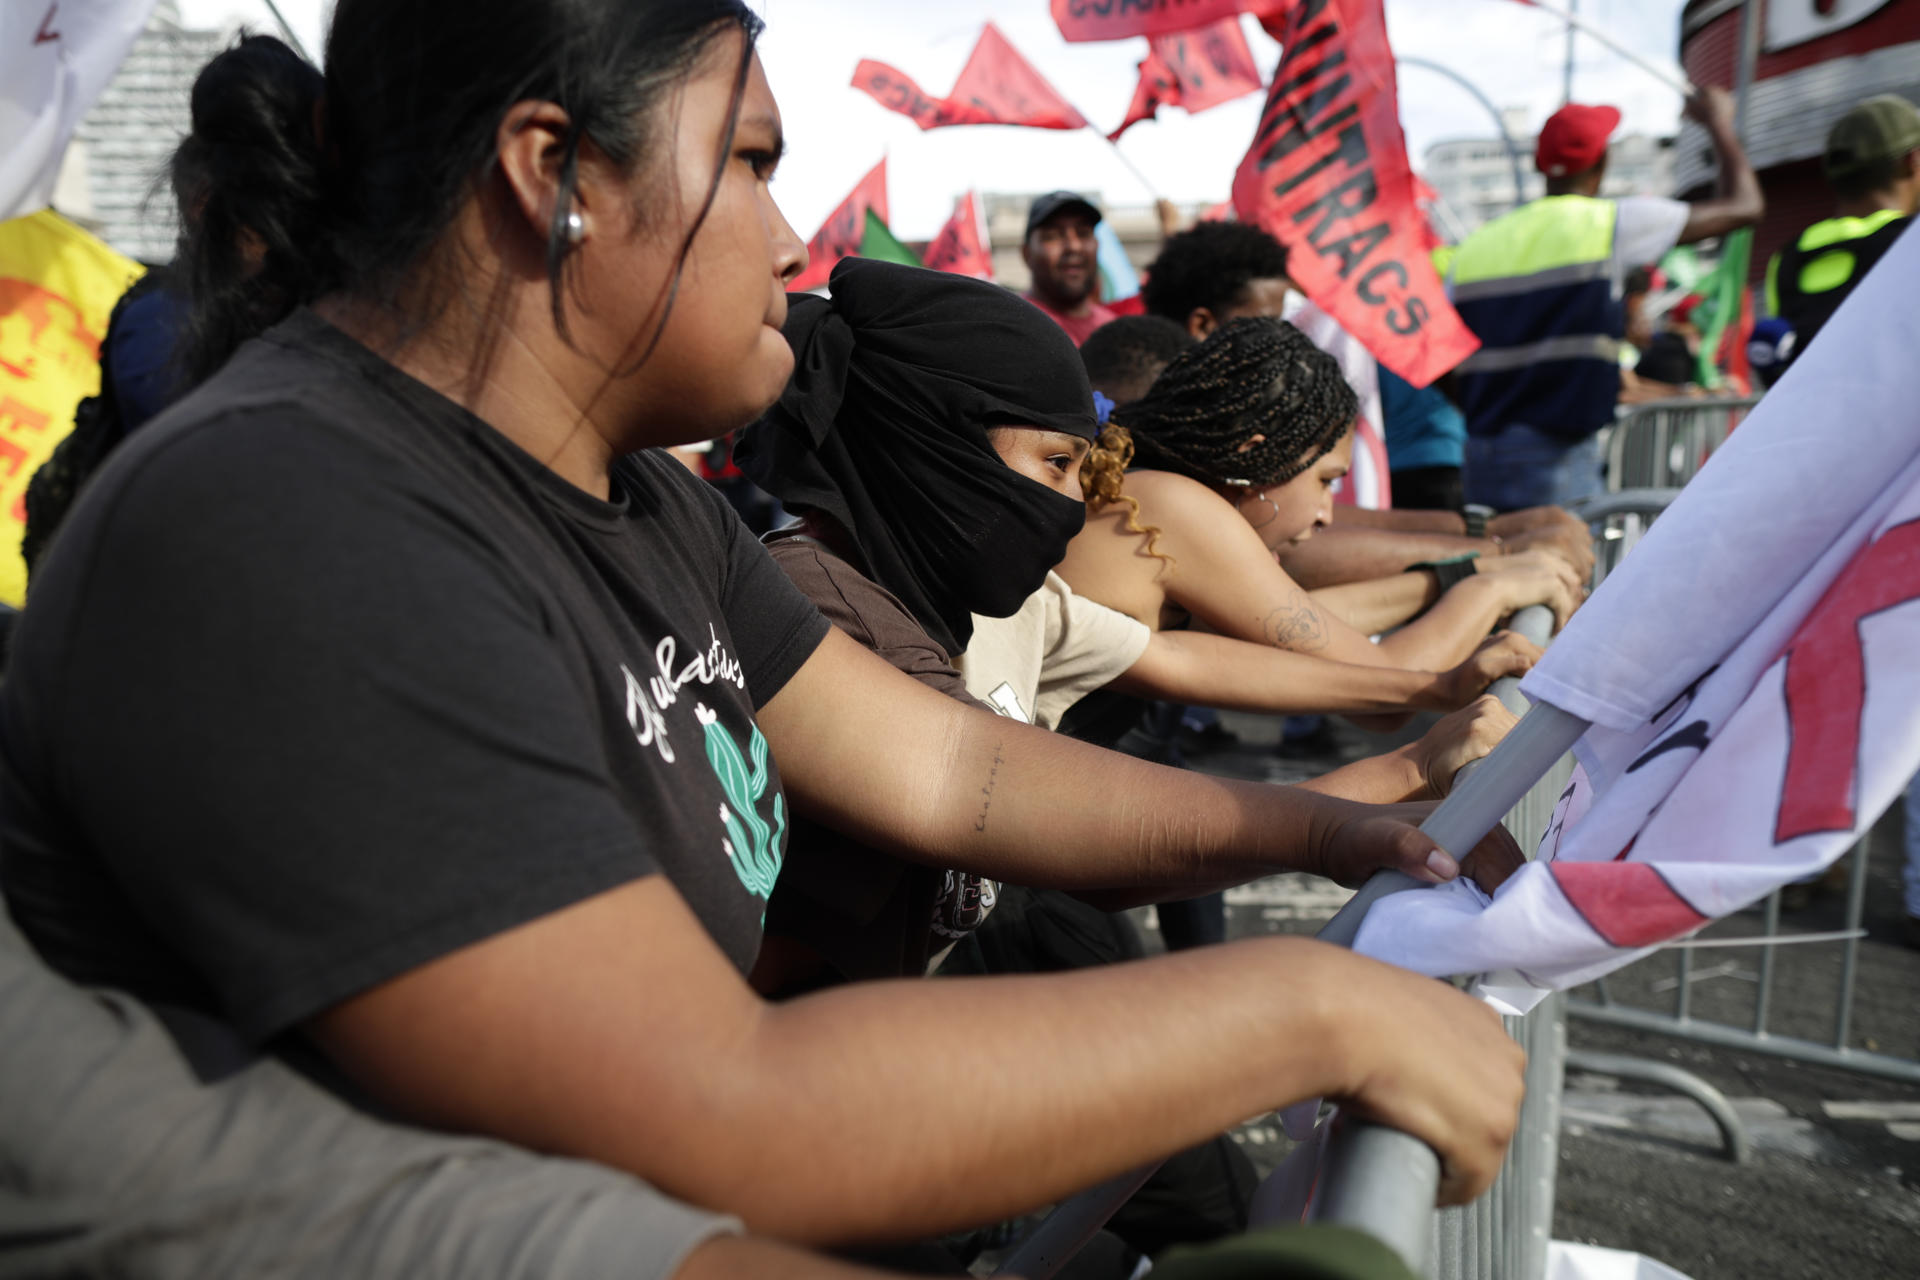 Decenas de ciudadanos fueron registrados este lunes, 28 de agosto, durante una protesta en contra de un nuevo contrato en favor de la subsidiaria en Panamá de la minera canadiense First Quantum Minerals, frente a La Asamblea Nacional (Parlamento), en Ciudad de Panamá (Panamá). EFE/Bienvenido Velasco